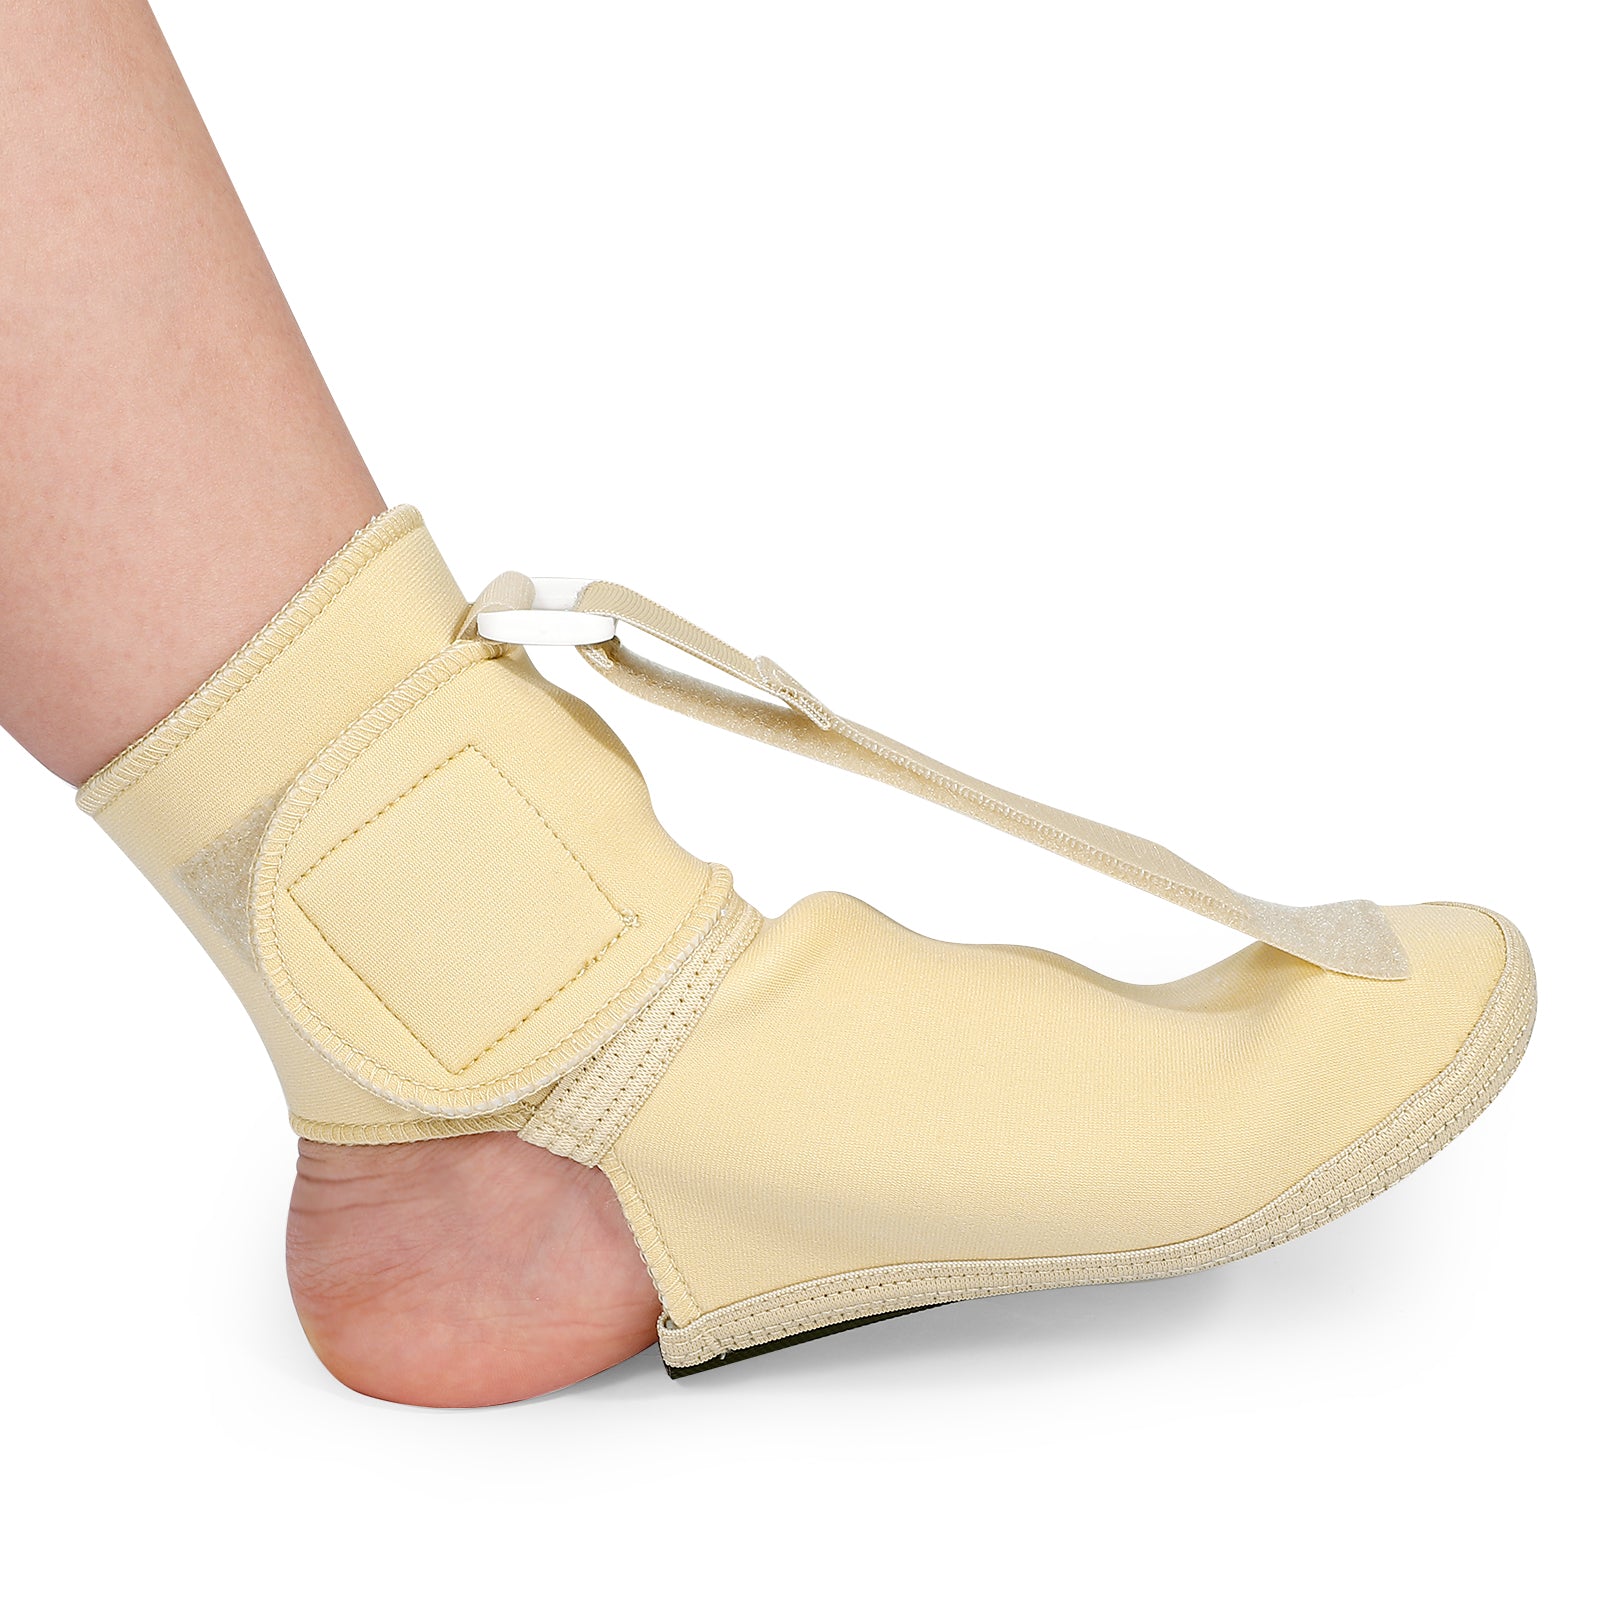 Fivali Foot Support Brace for Drop Foot-ABF069-02-Beige-S